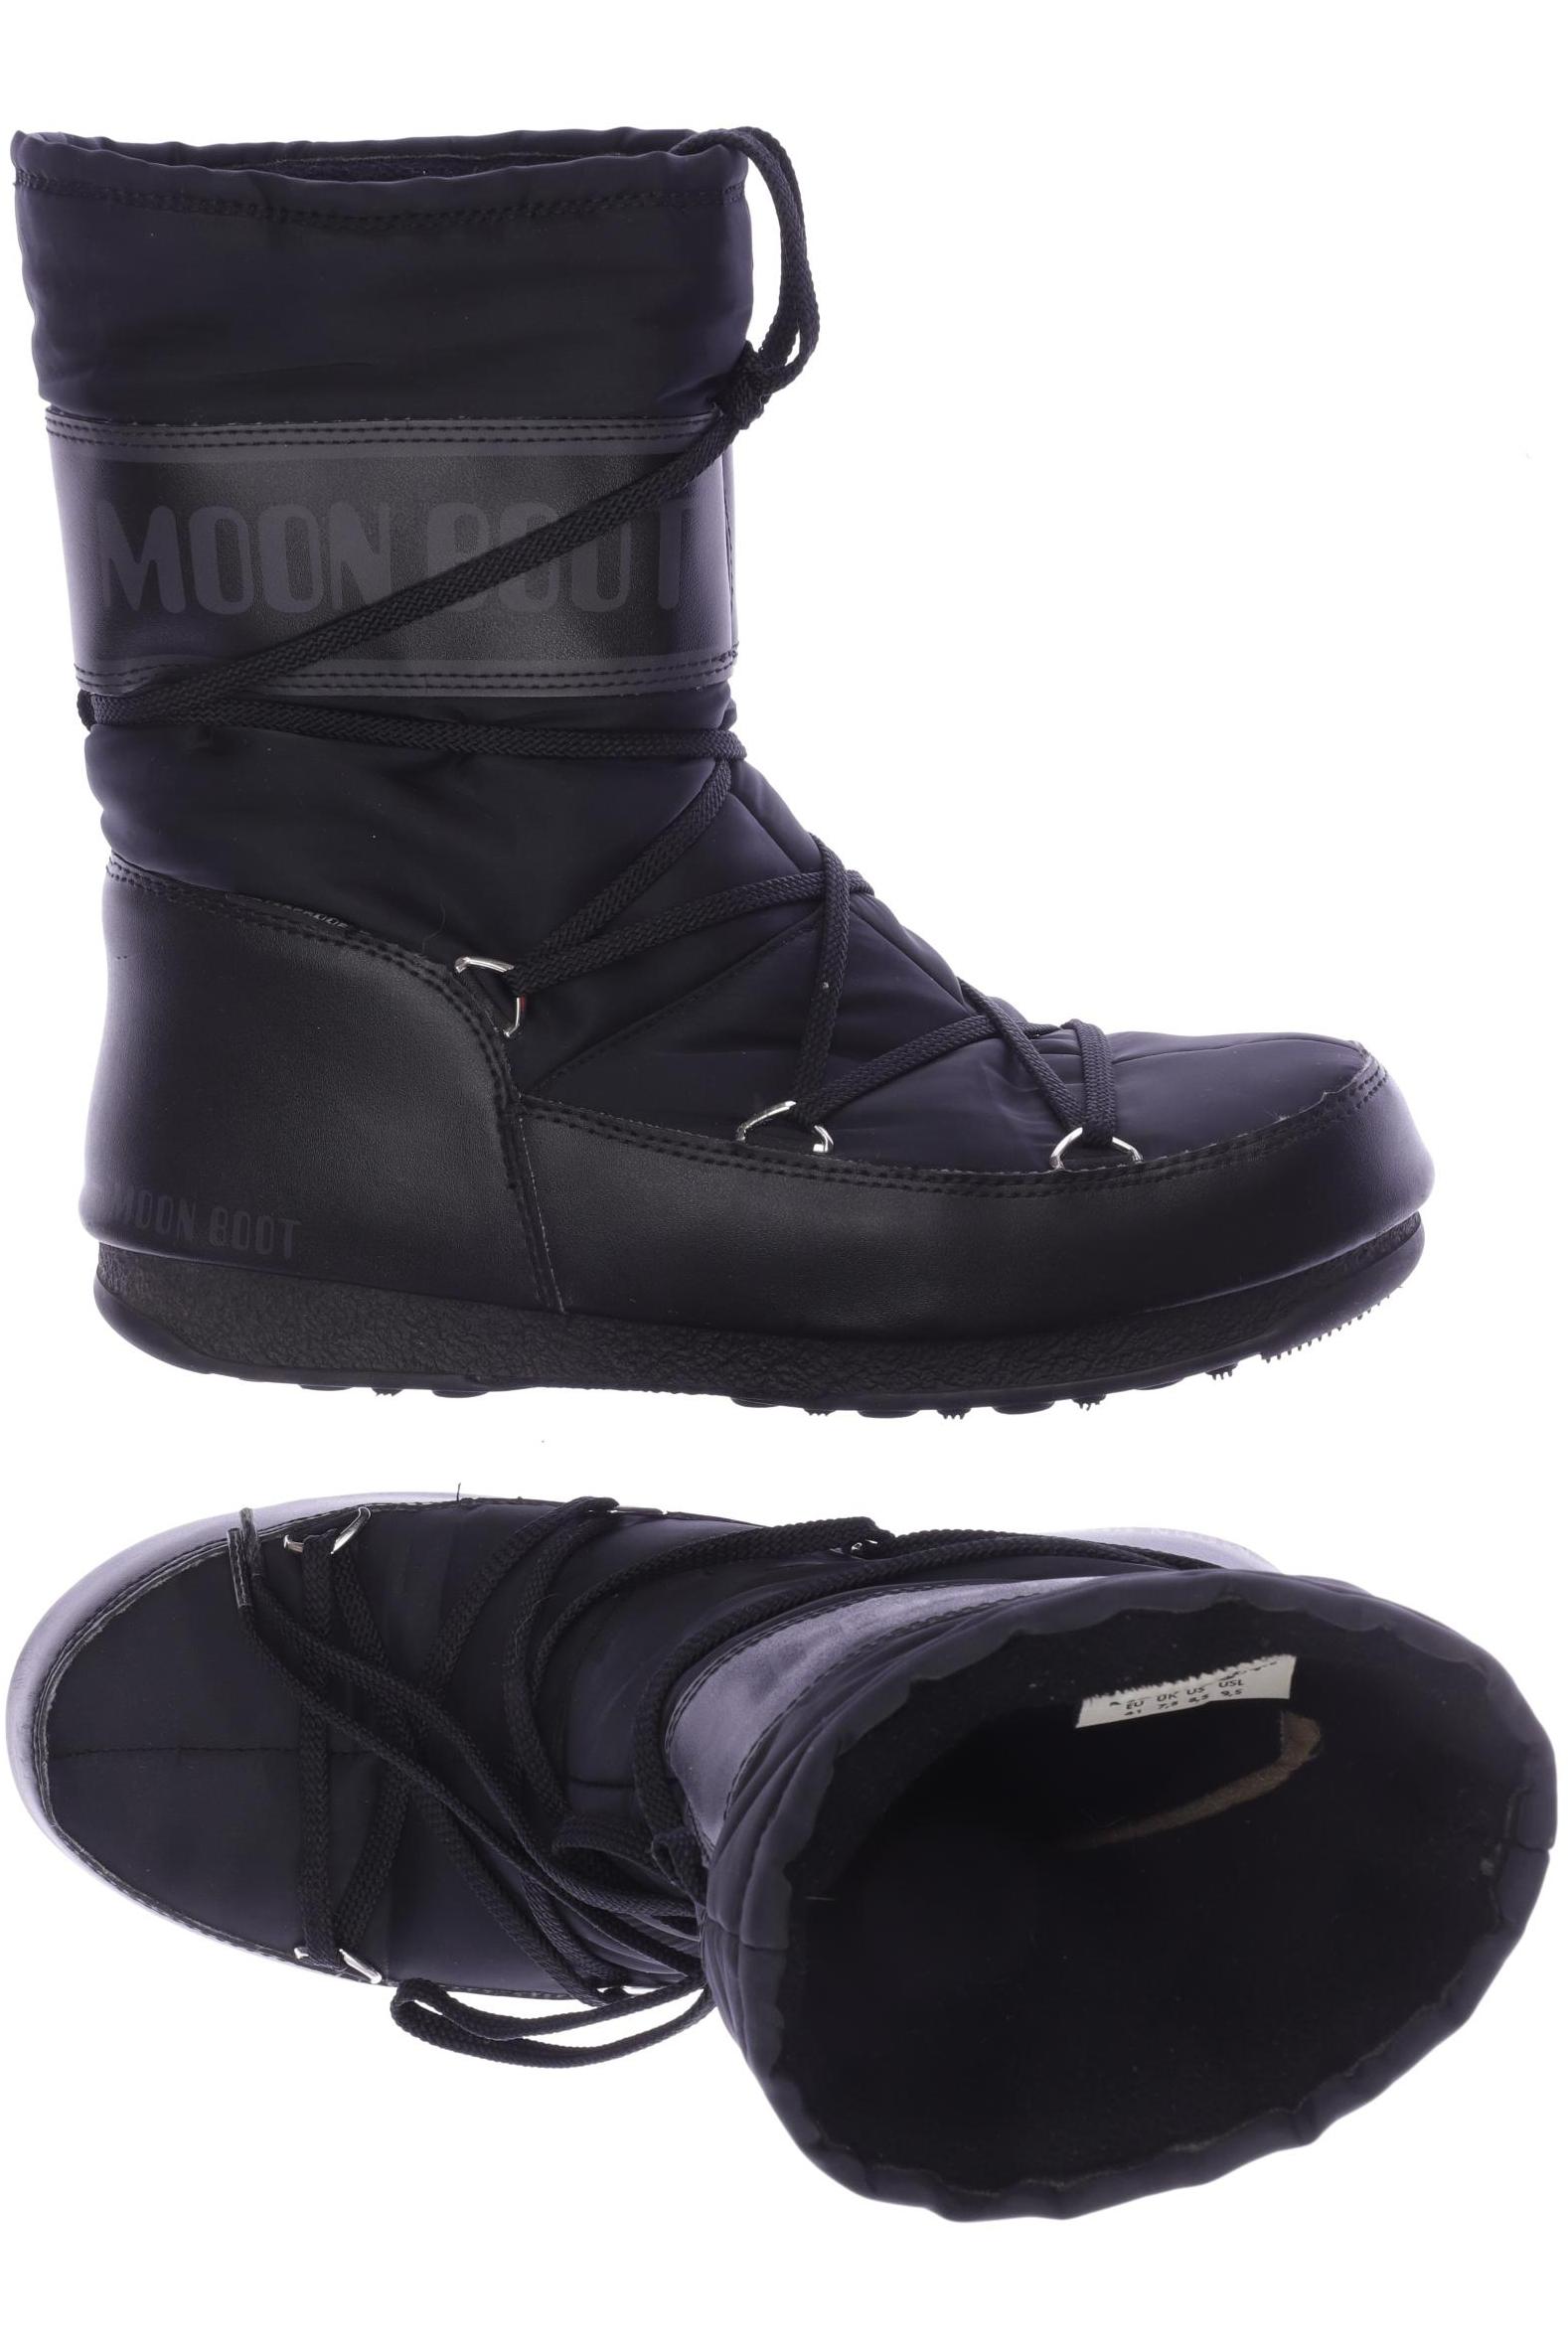 Moon Boot Damen Stiefel, schwarz, Gr. 41 von moon boot